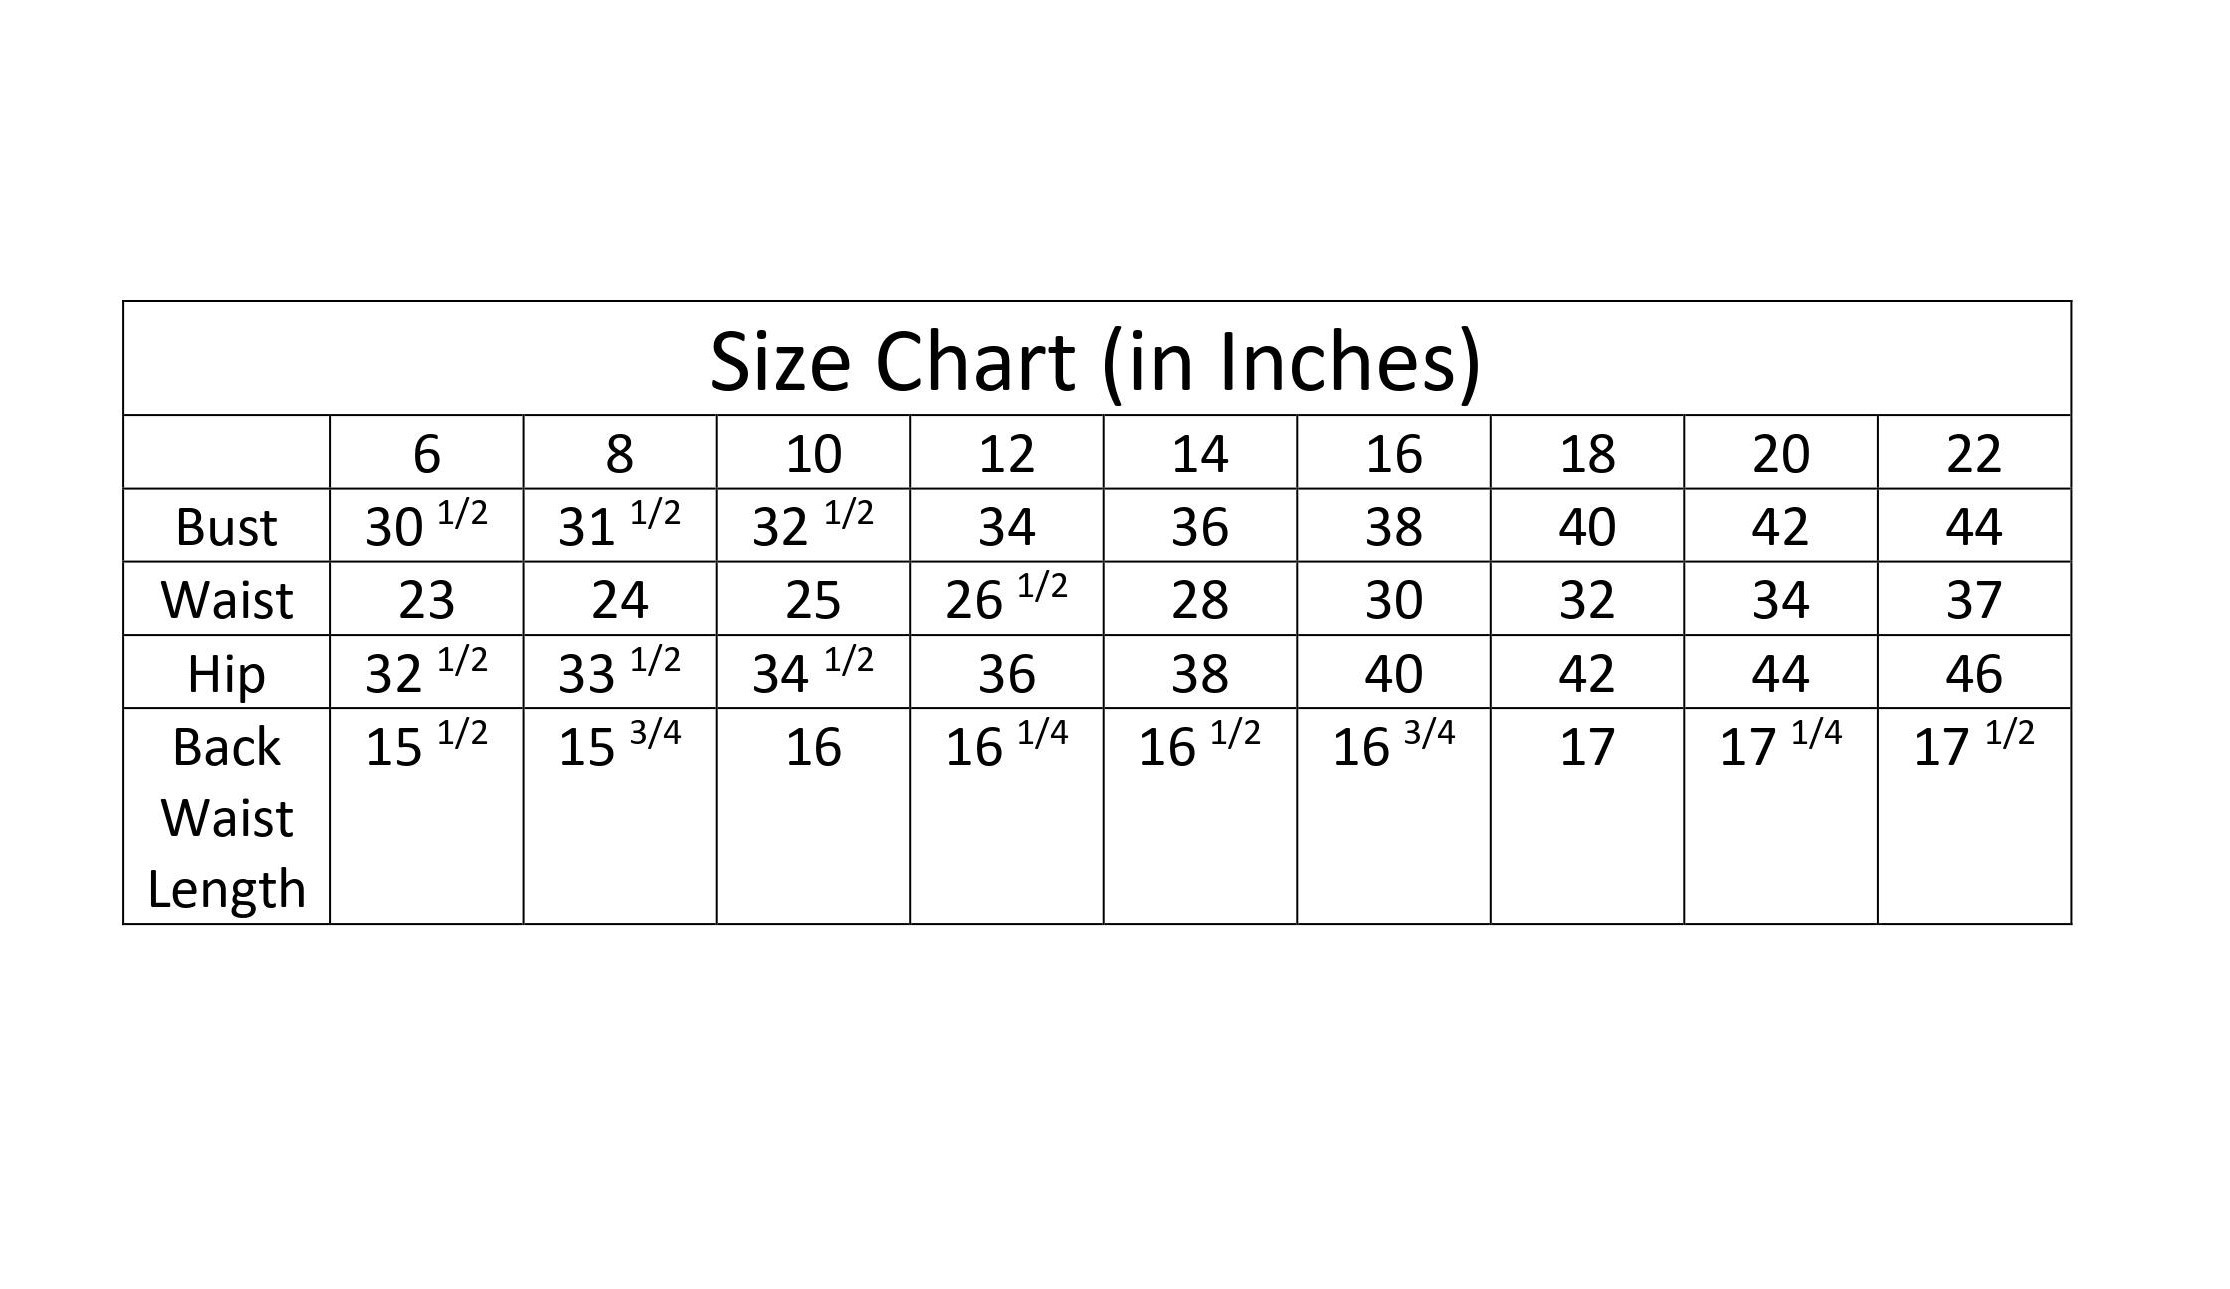 Image of sizing chart